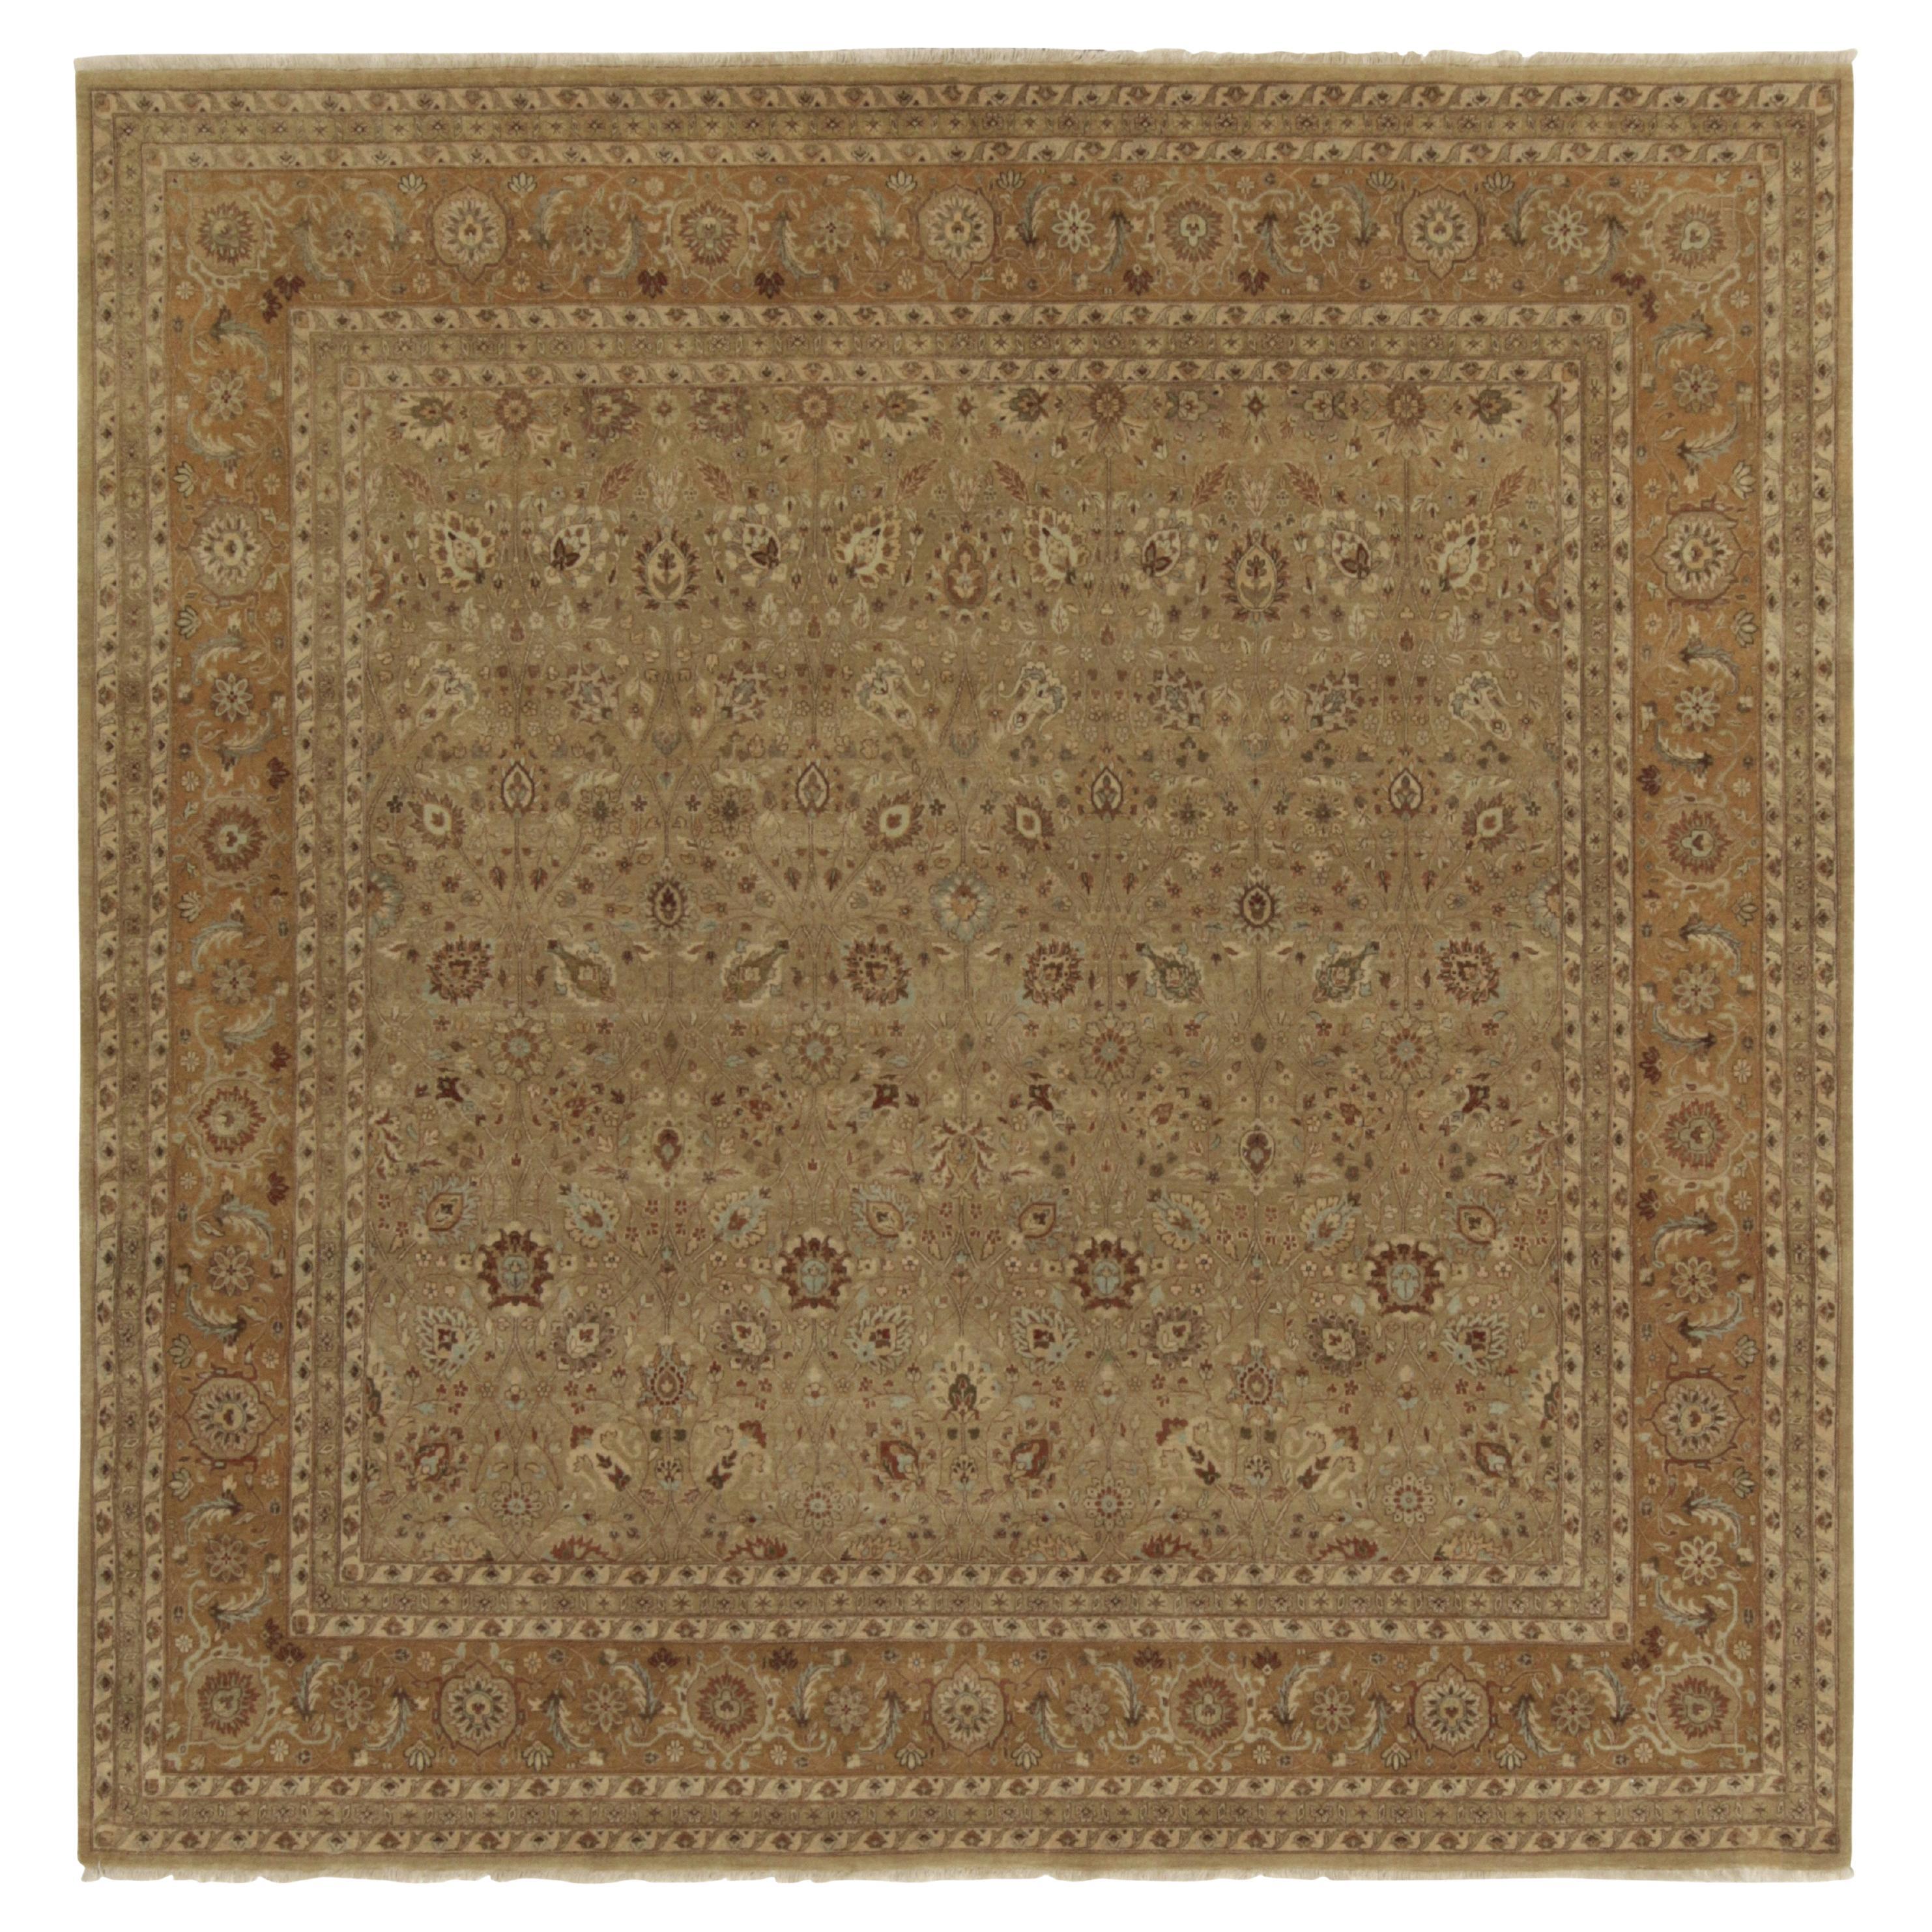 Rug & Kilim's Antique Persian style Square rug in Beige-Brown Floral Patterns (tapis carré ancien de style persan à motifs floraux beige et marron)